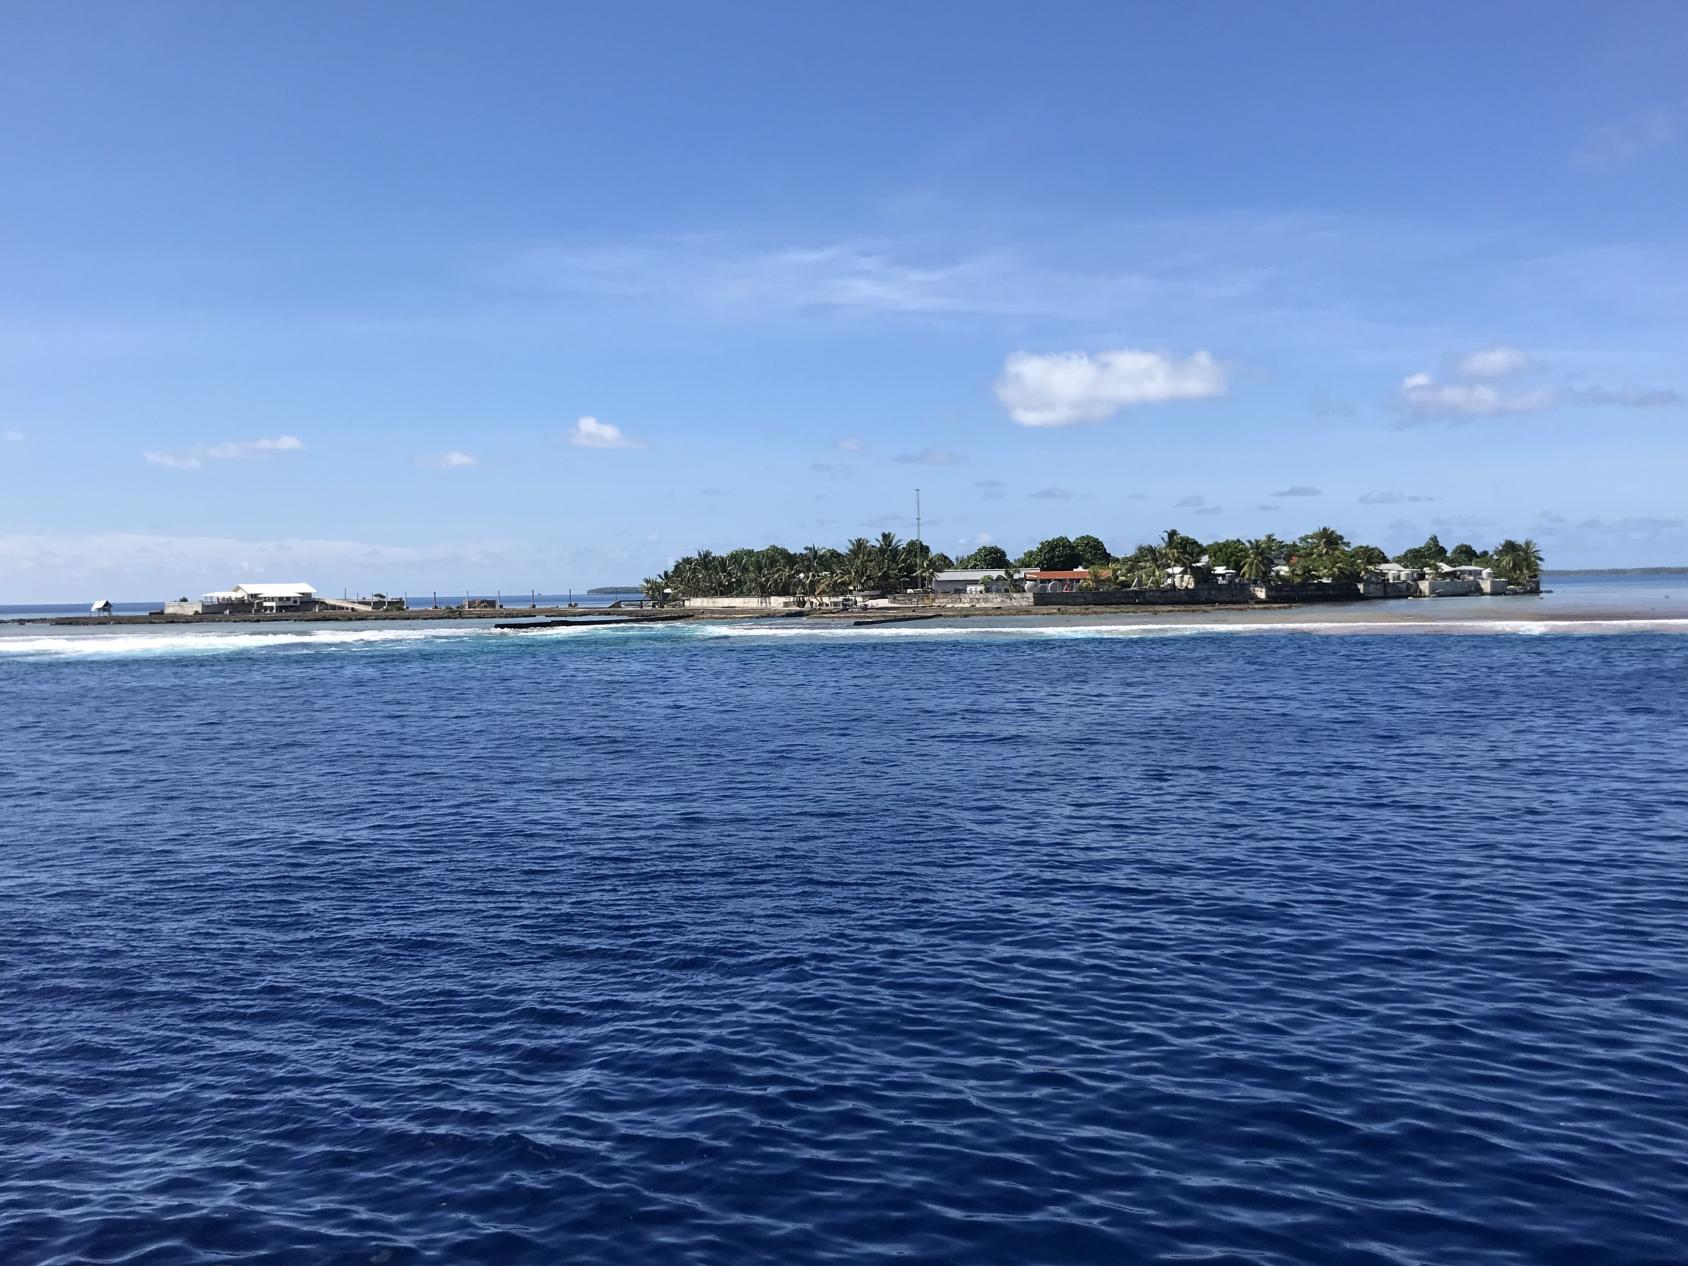 منظر طبيعي لدولة جزرية صغيرة، حيث يمكن رؤية المنازل والتبادل التجاري من المحيط.